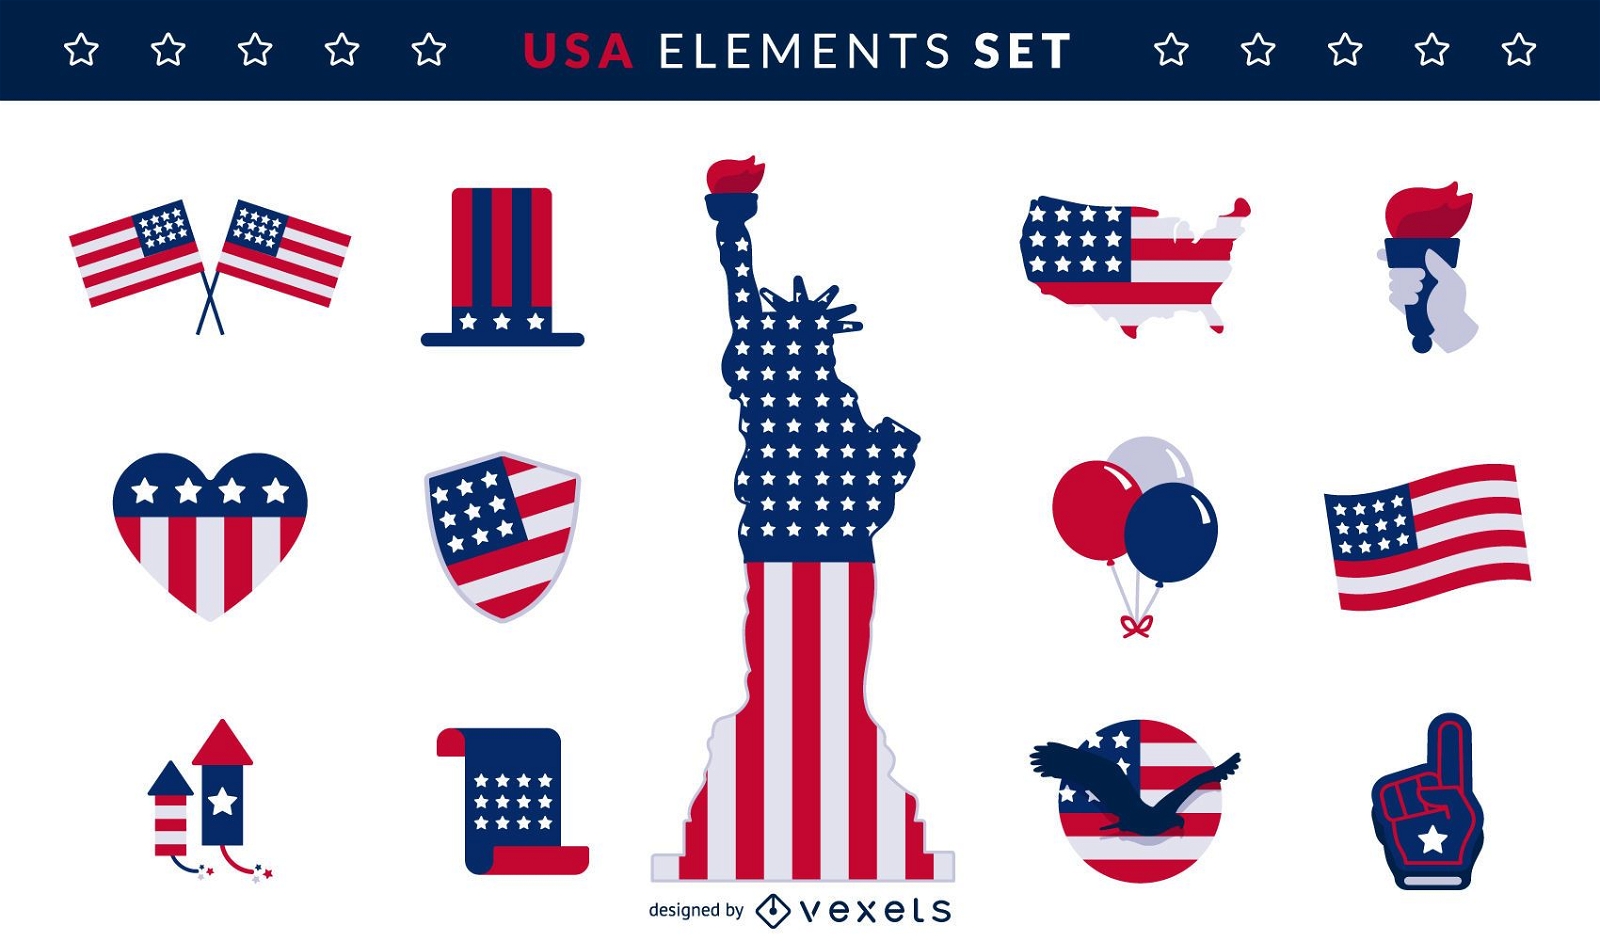 USA elements set